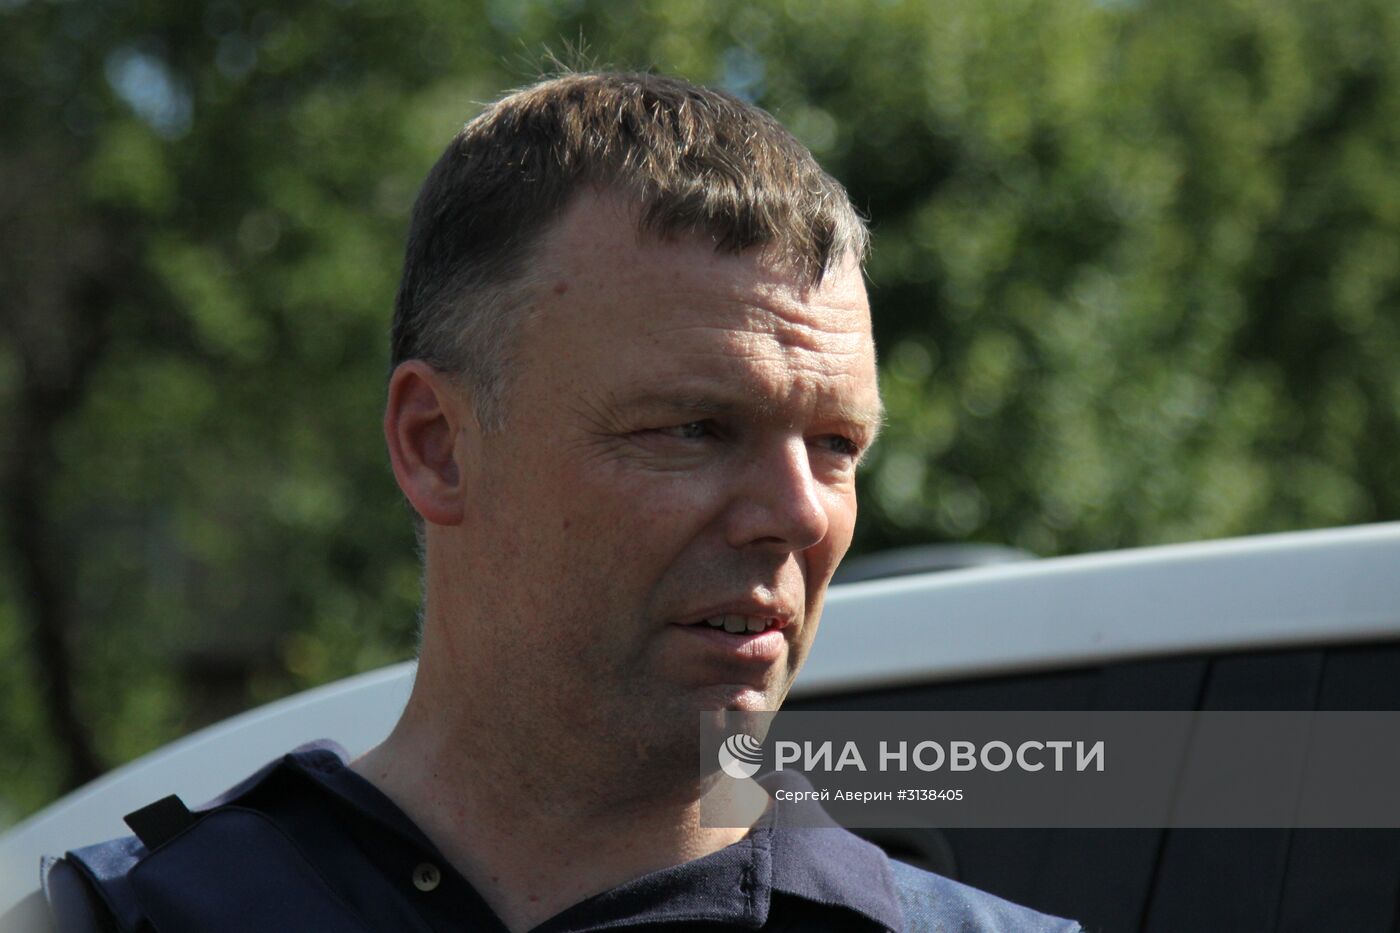 Первый замглавы СММ ОБСЕ на Украине А. Хуг посетил г. Ясиноватая в Донецкой области